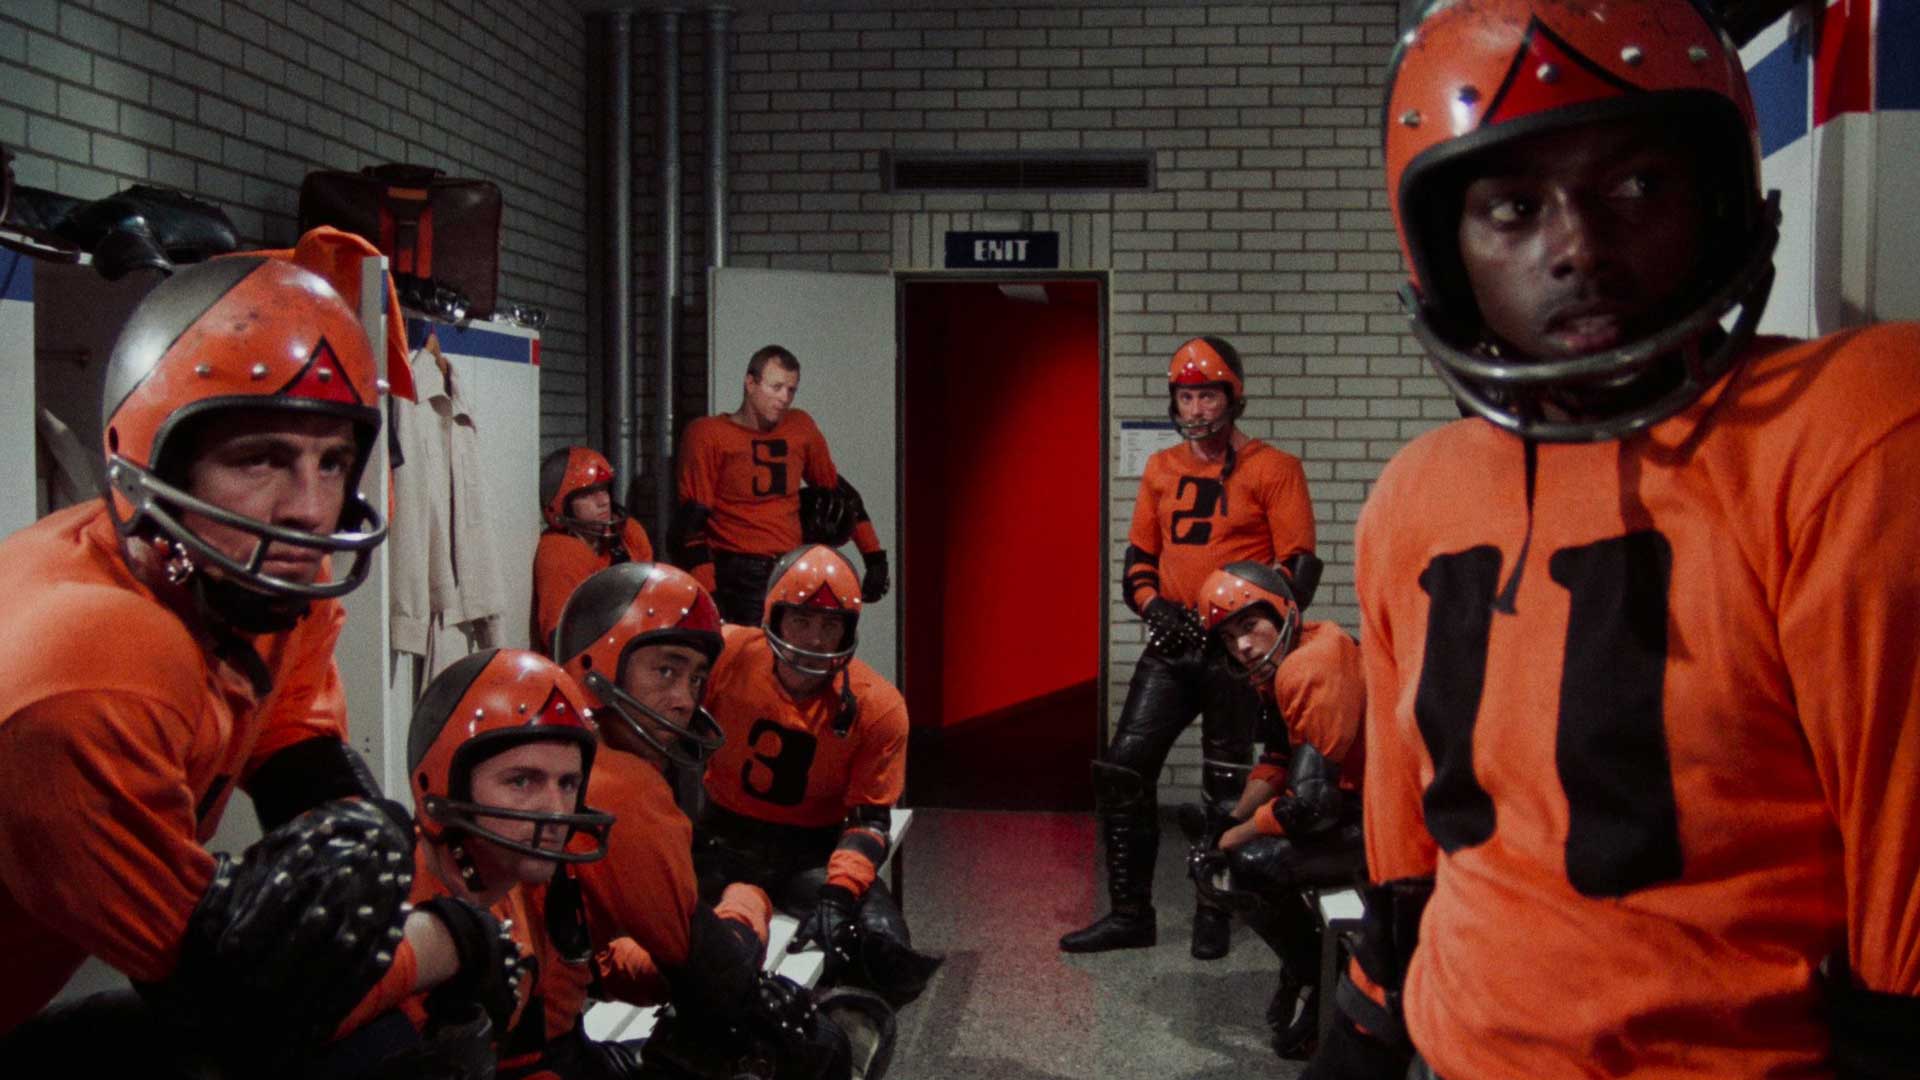 بازیکنان تیم با لباس نارنجی در فیلم علمی-تخیلی Rollerball